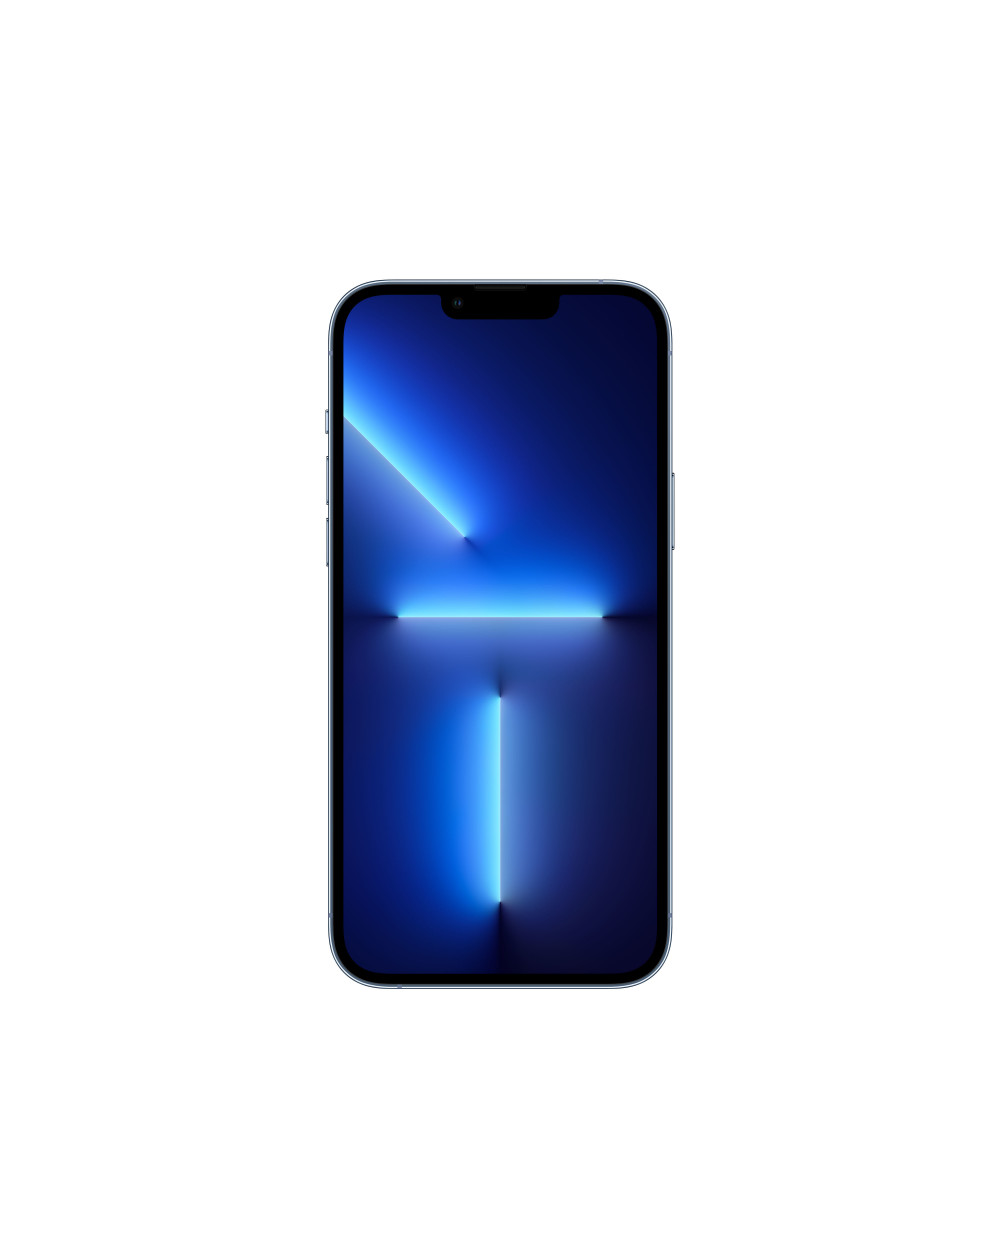 iPhone 13 Pro Max 512GB Sierra blue - Prodotto rigenerato grado A - C&C Shop